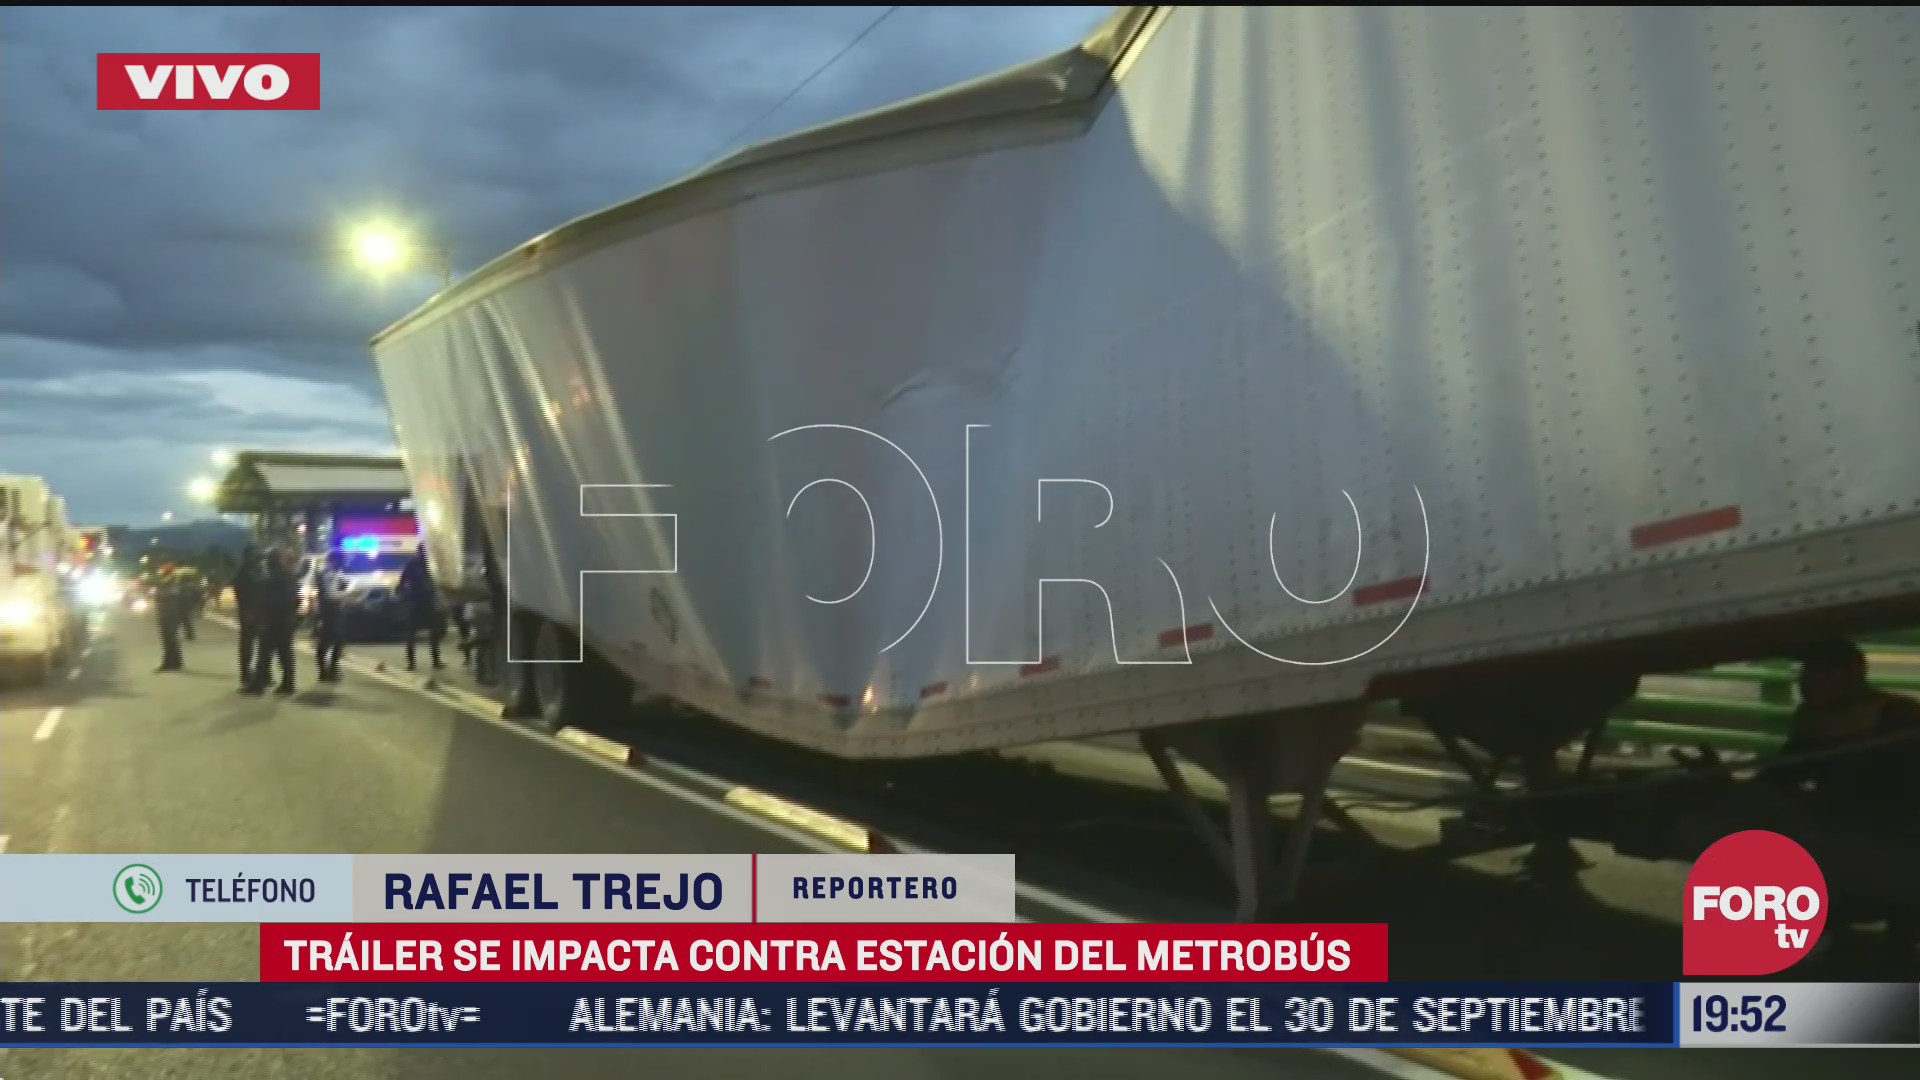 trailer choca contra estacion hospital troncoso del metrobus cdmx